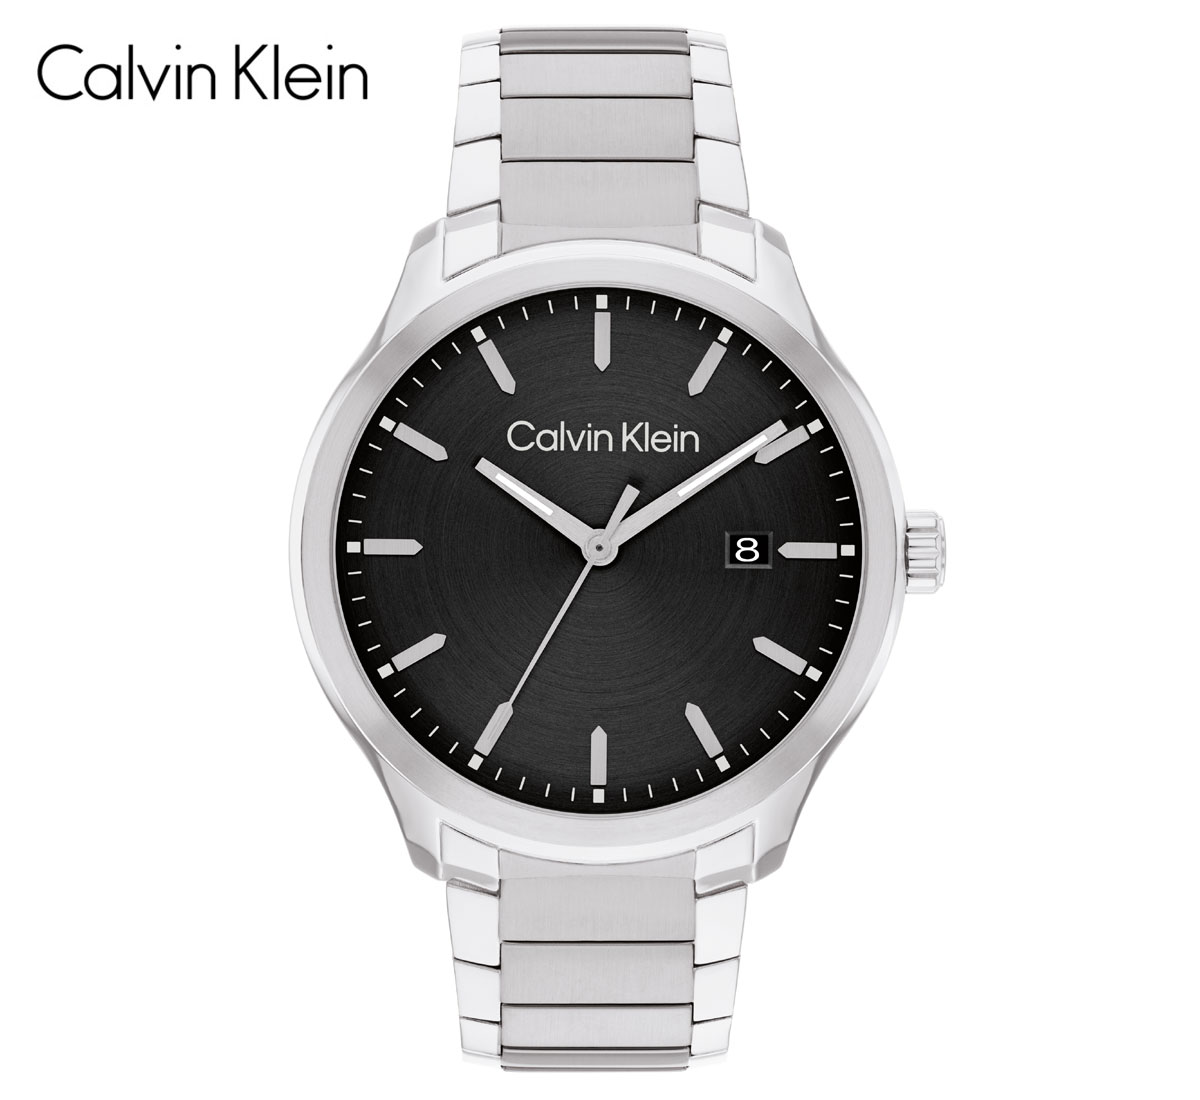 Calvin Klein カルバンクライン 25200348 腕時計 DEFINE ディファイン メンズ 男性用 アナログ クォーツ 3針モデル シルバー ブラック文字盤 シンプル ギフト プレゼント 【送料無料】